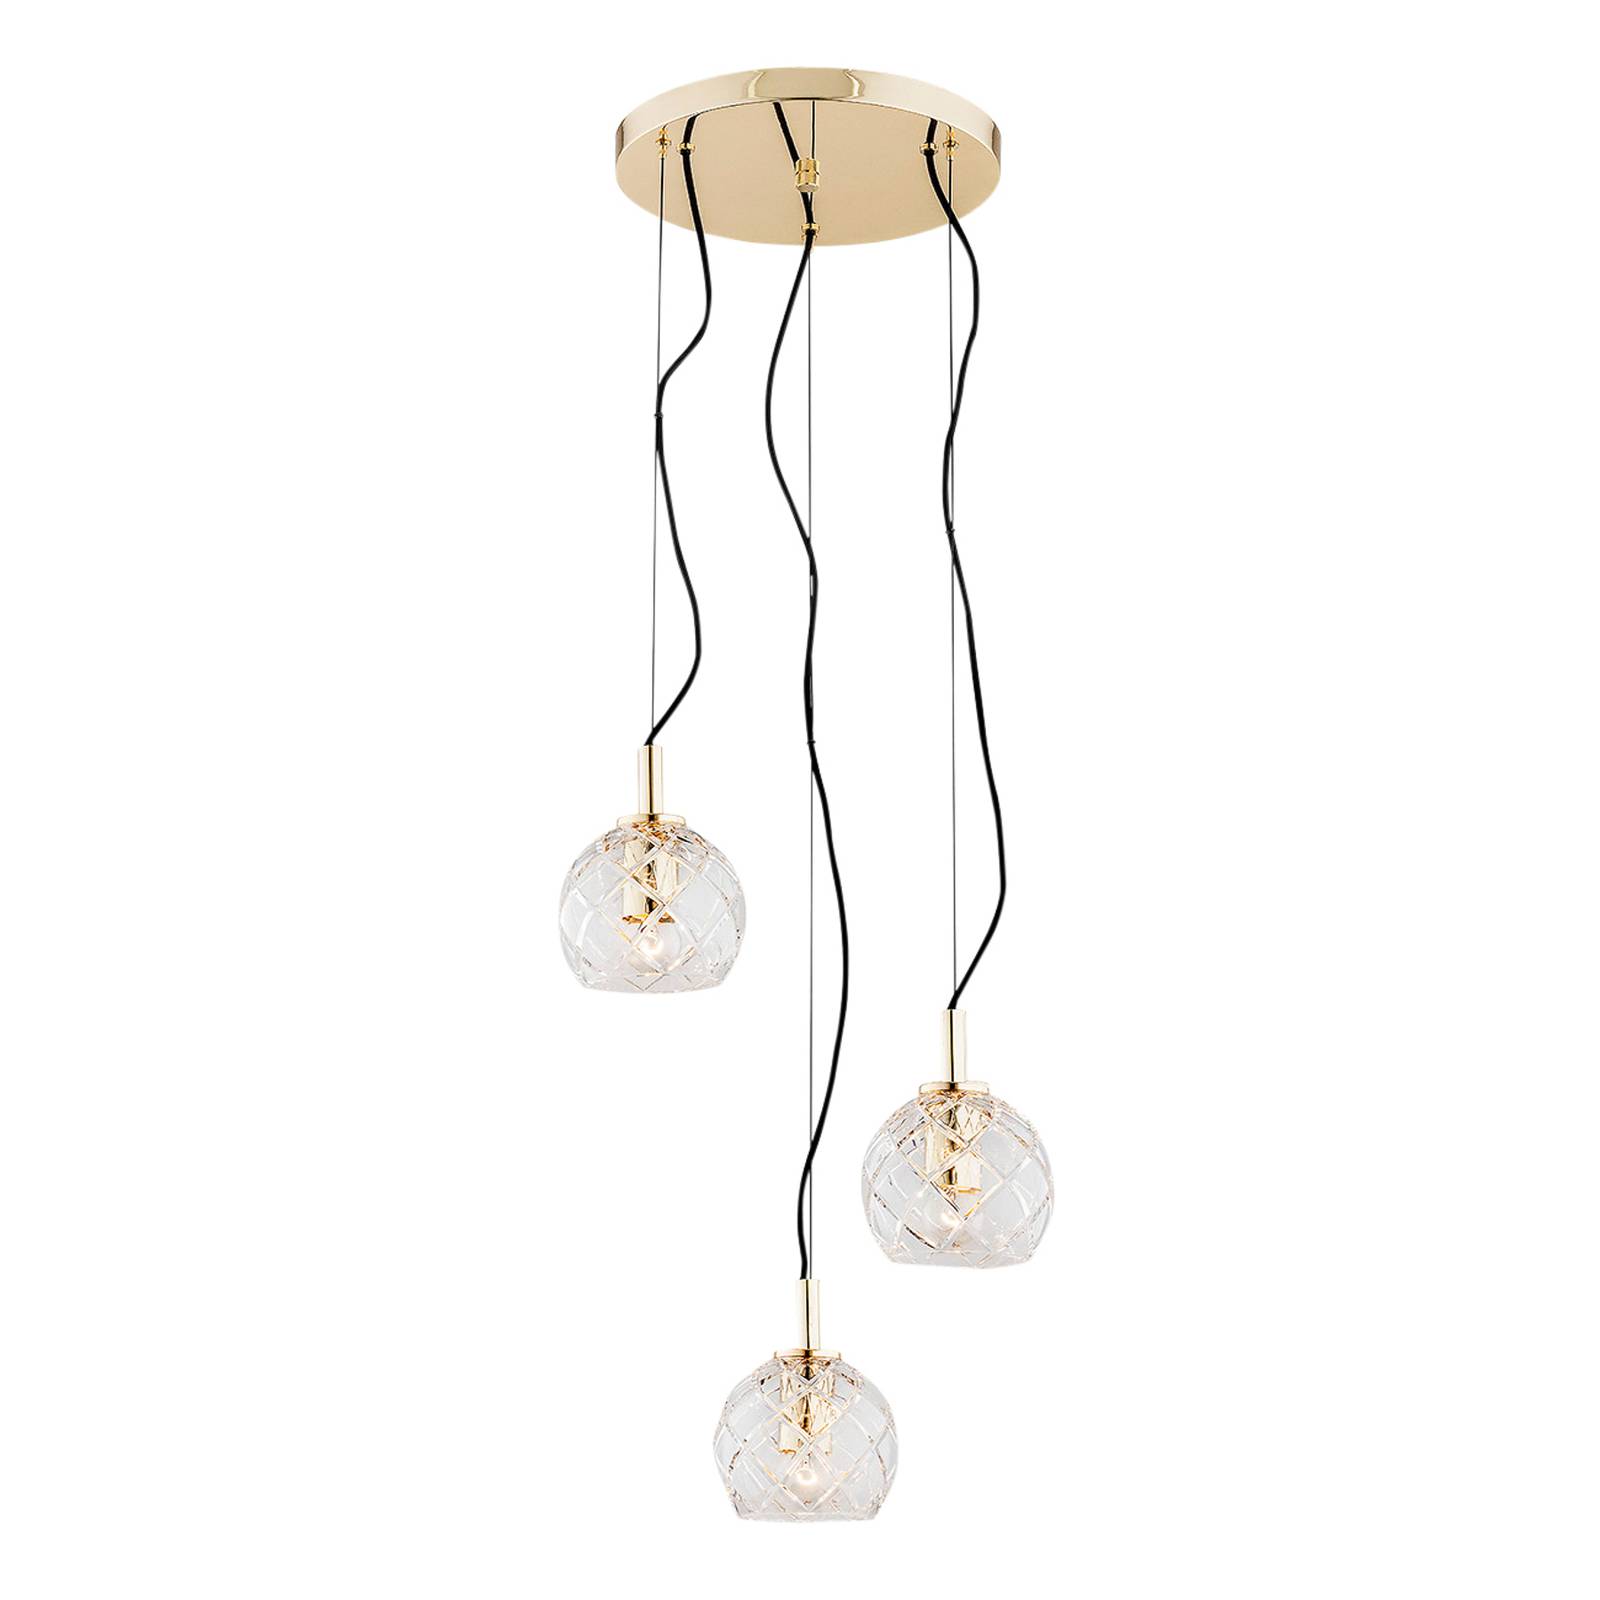 Hanglamp Odel met glazen kappen 3-lamps